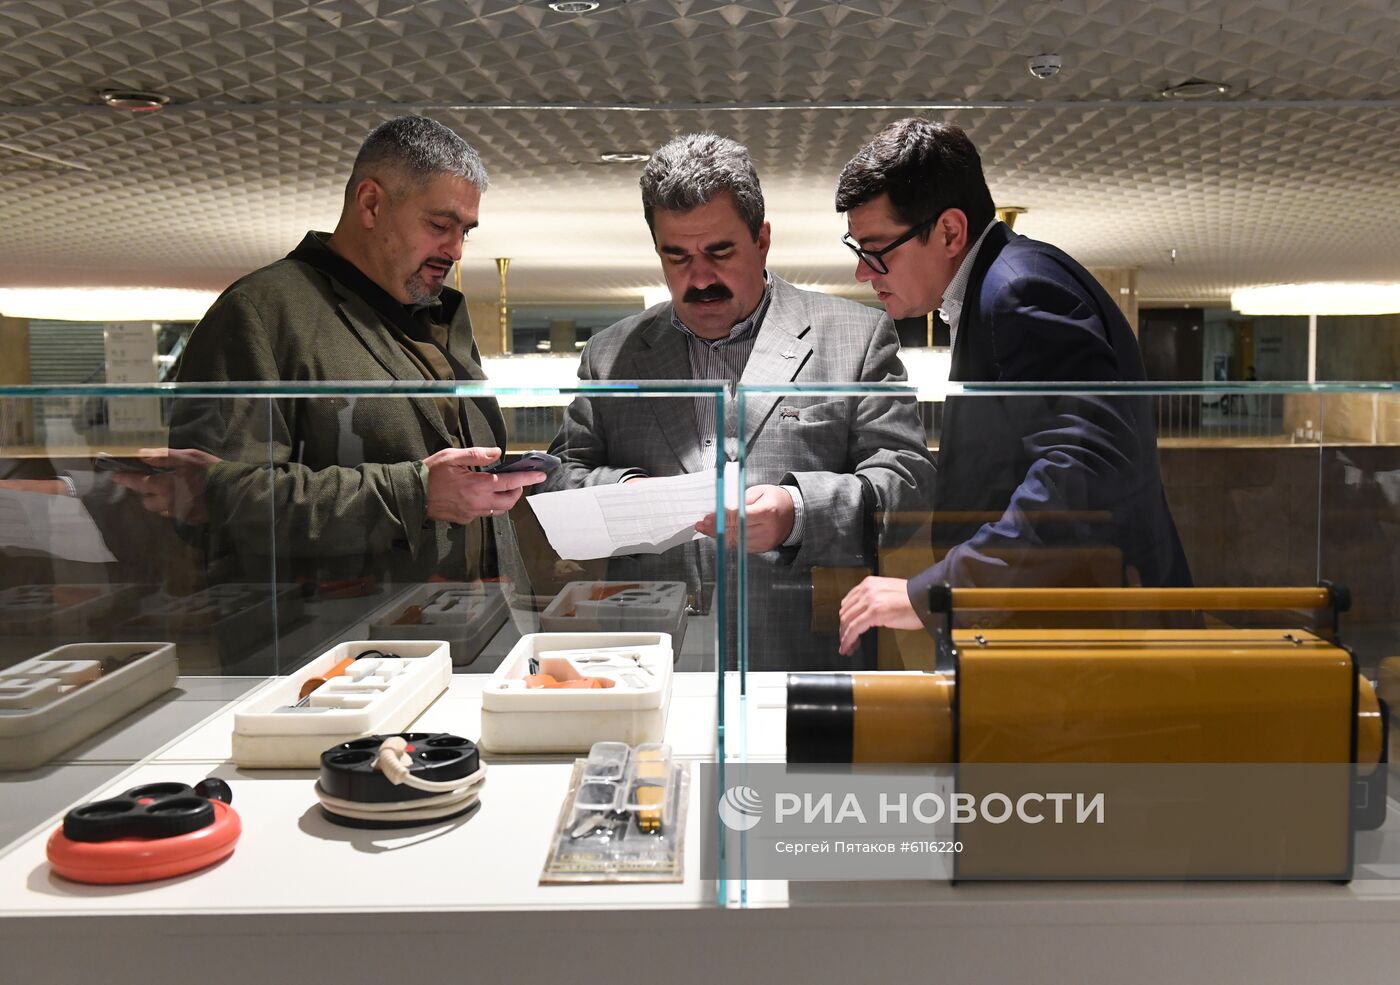 Выставка "МИР! ДРУЖБА! ДИЗАЙН! История российского промышленного дизайна" в Москве